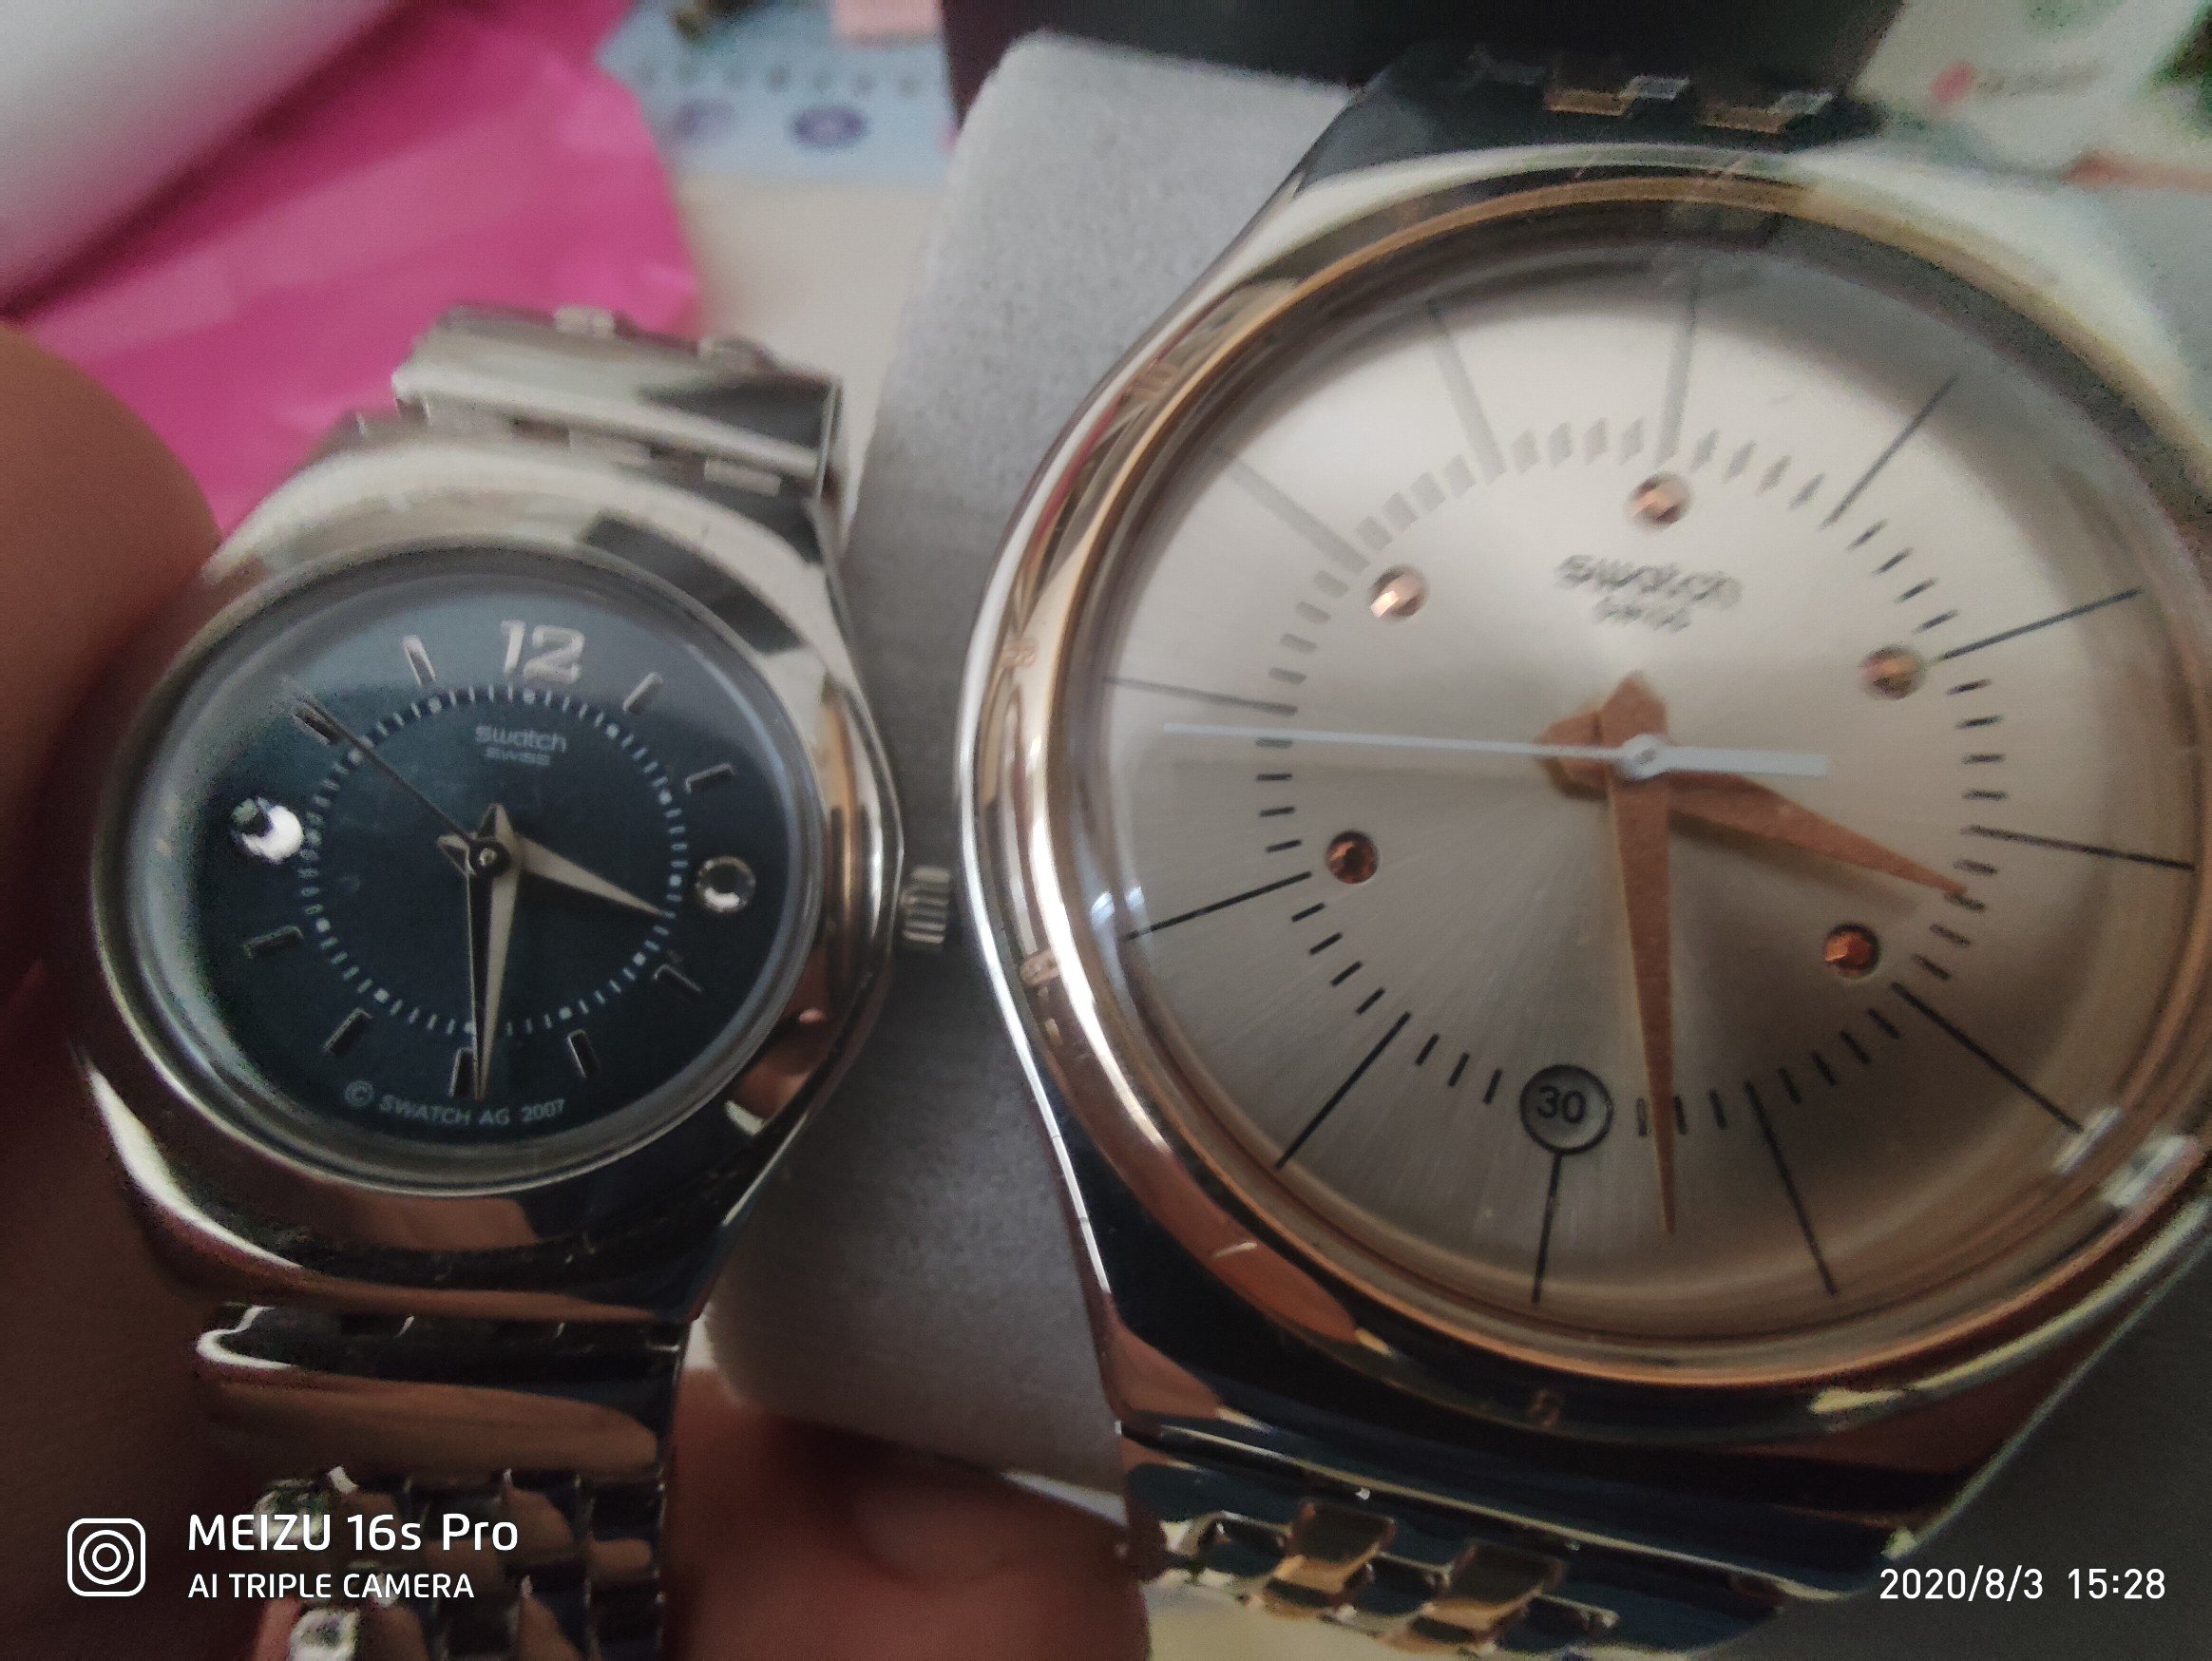 我这两个手表放着半年没戴了，时间也不咋差啊1